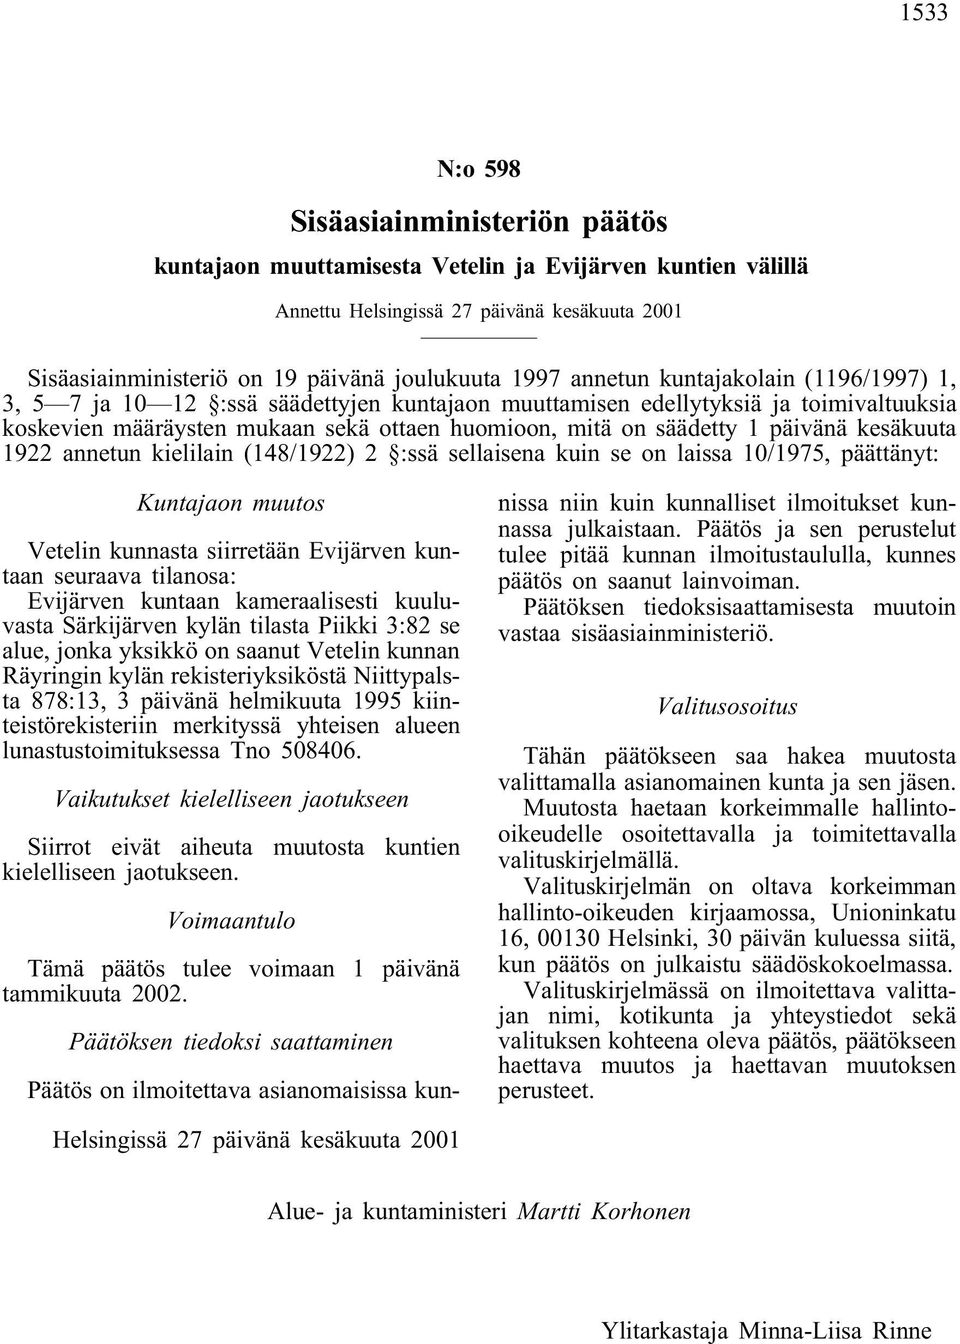 päivänä kesäkuuta 1922 annetun kielilain (148/1922) 2 :ssä sellaisena kuin se on laissa 10/1975, päättänyt: Kuntajaon muutos Vetelin kunnasta siirretään Evijärven kuntaan seuraava tilanosa: Evijärven